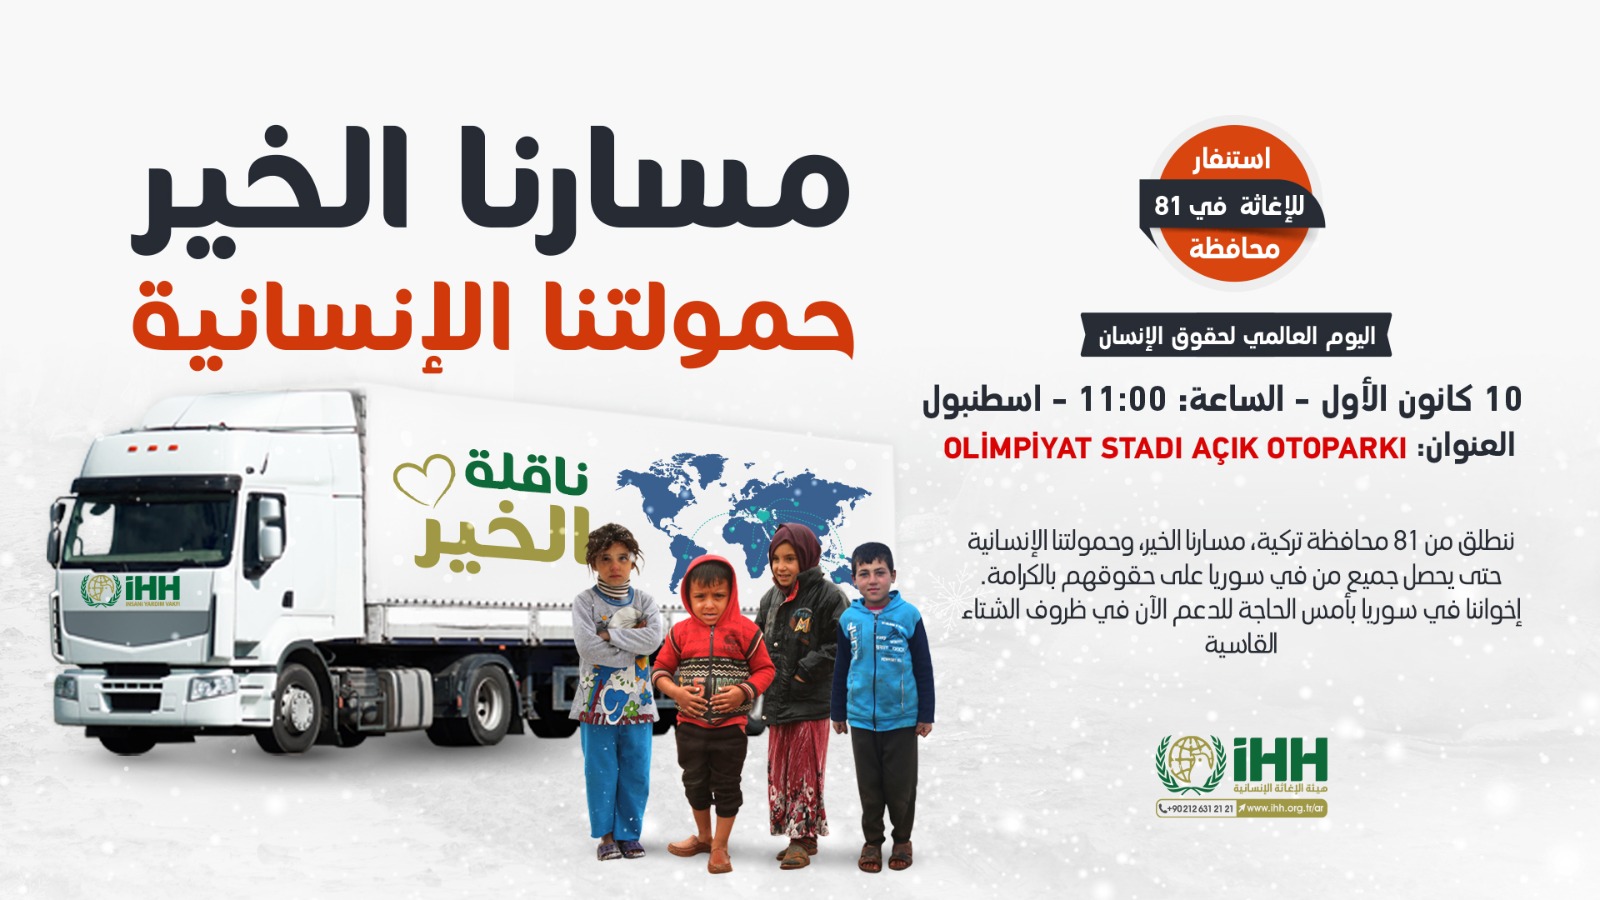 “مسارنا الخير” حملة إغاثية ضخمة تطلقها “IHH” للداخل السوري.